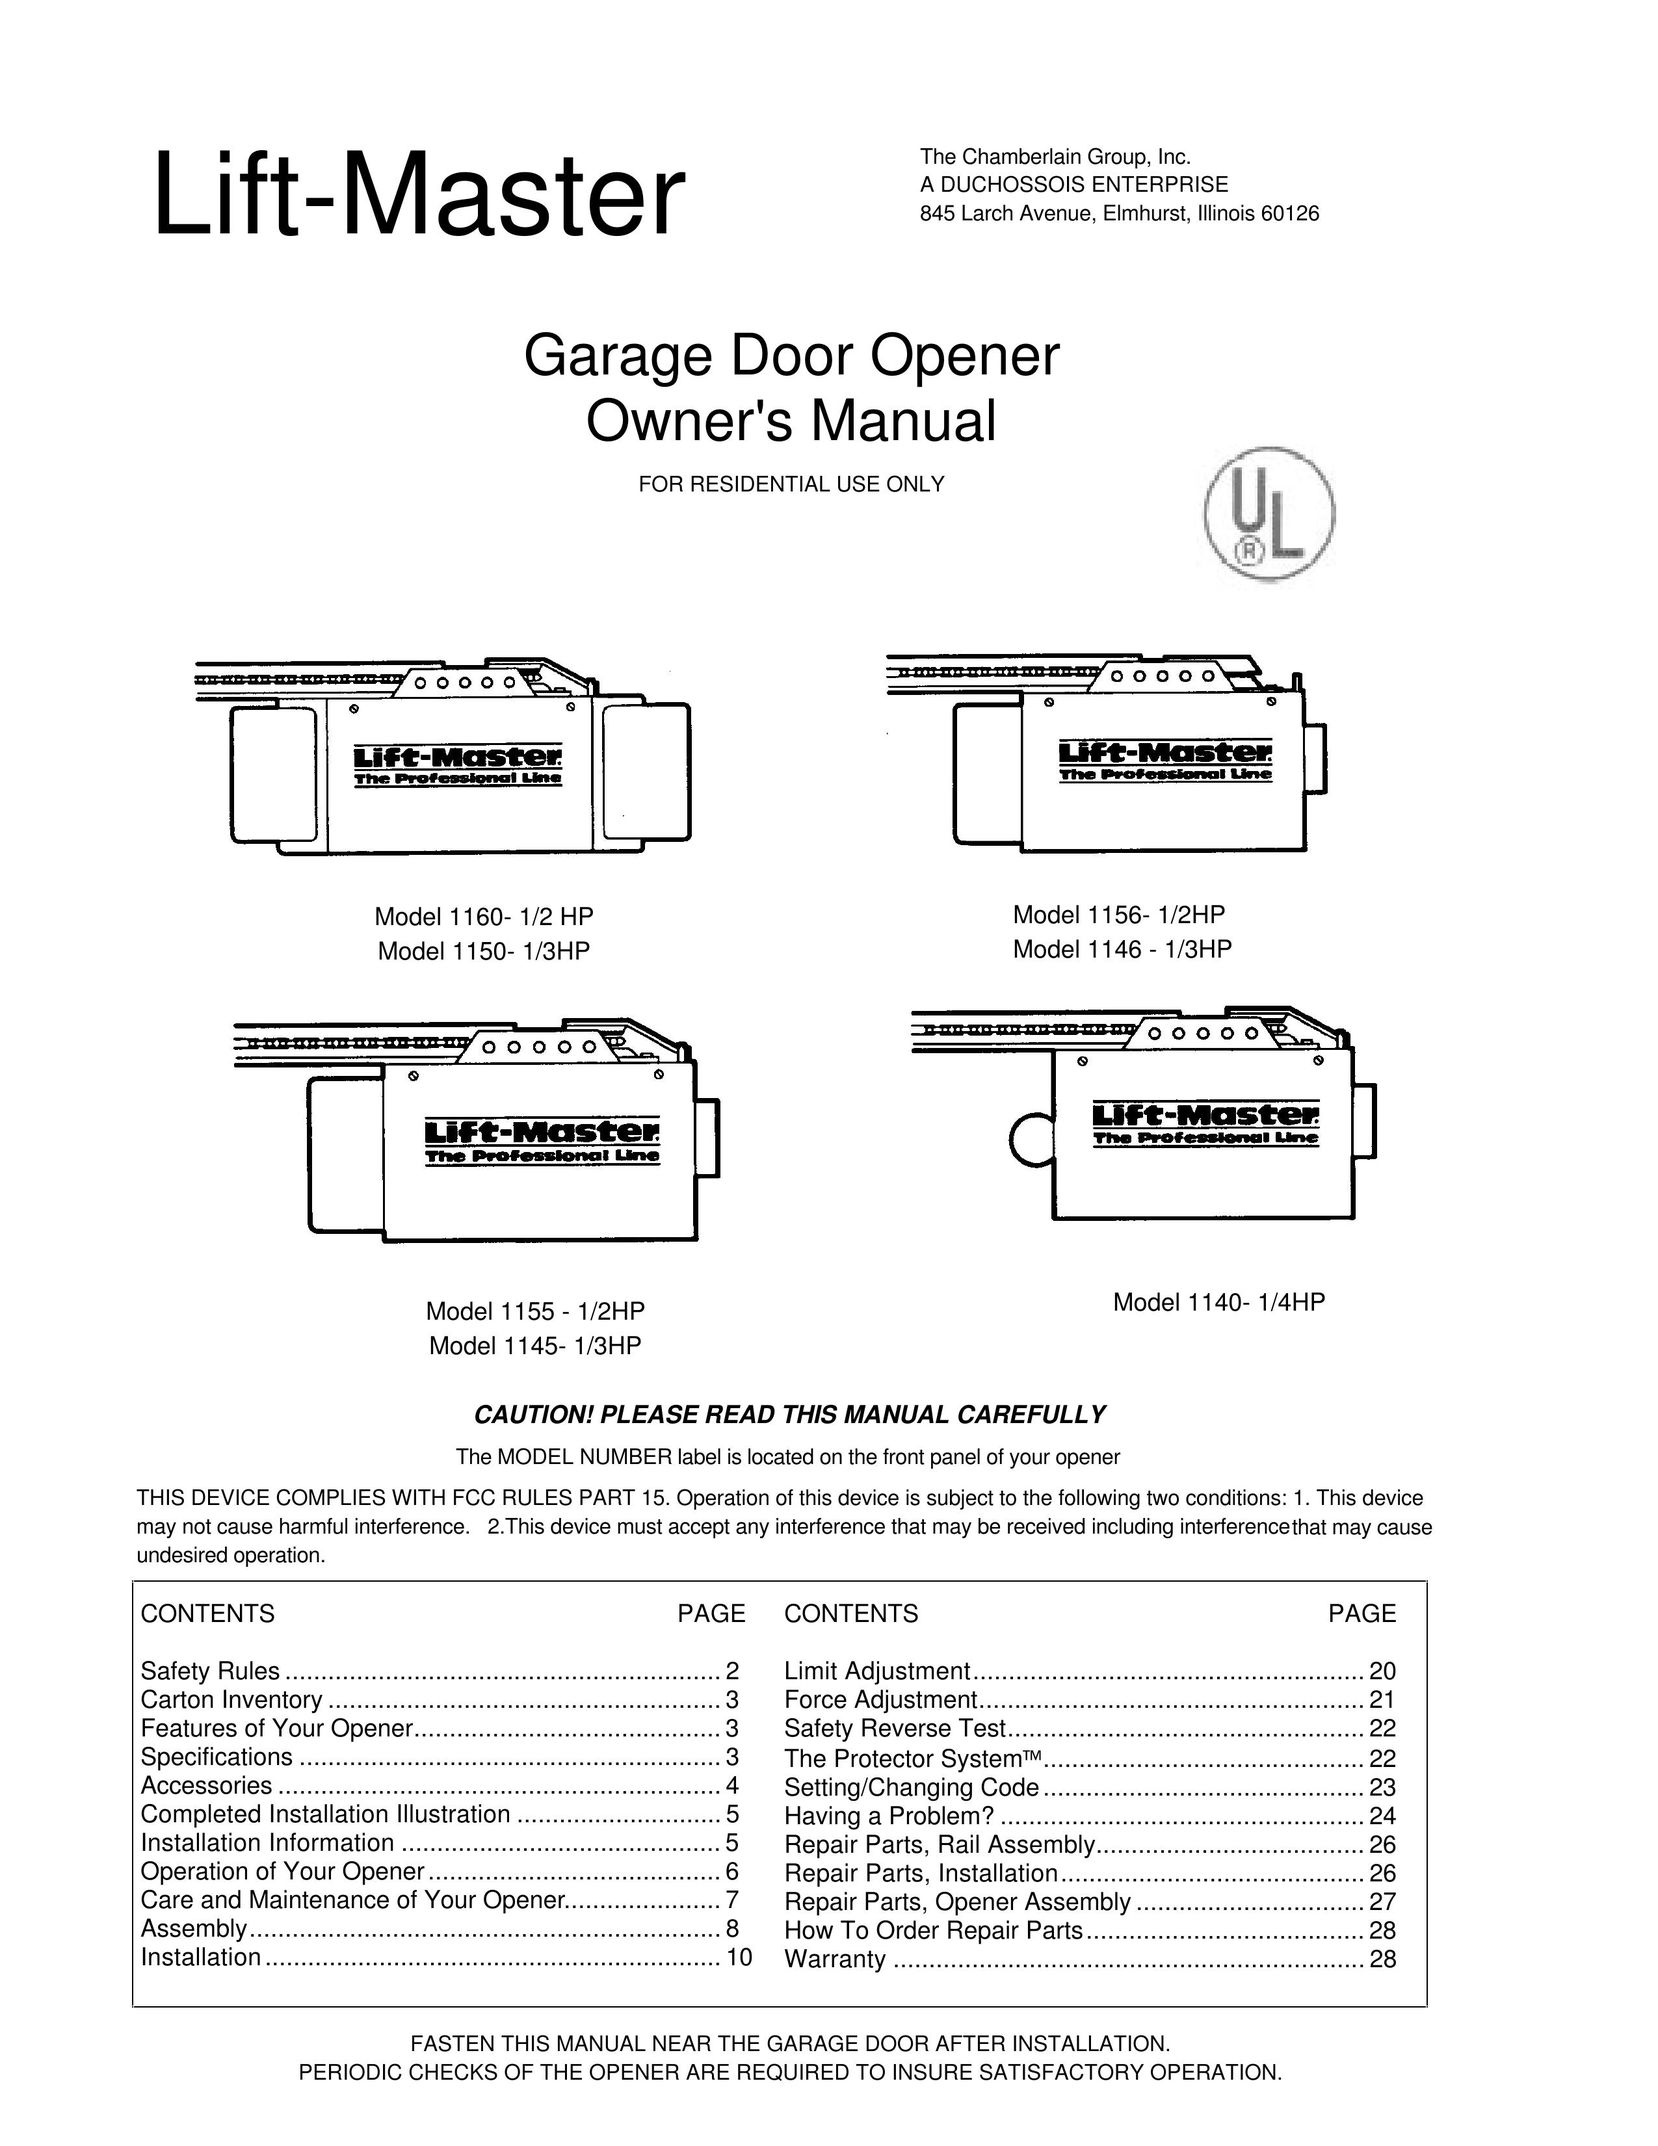 Chamberlain 1150- 1/3HP Garage Door Opener User Manual